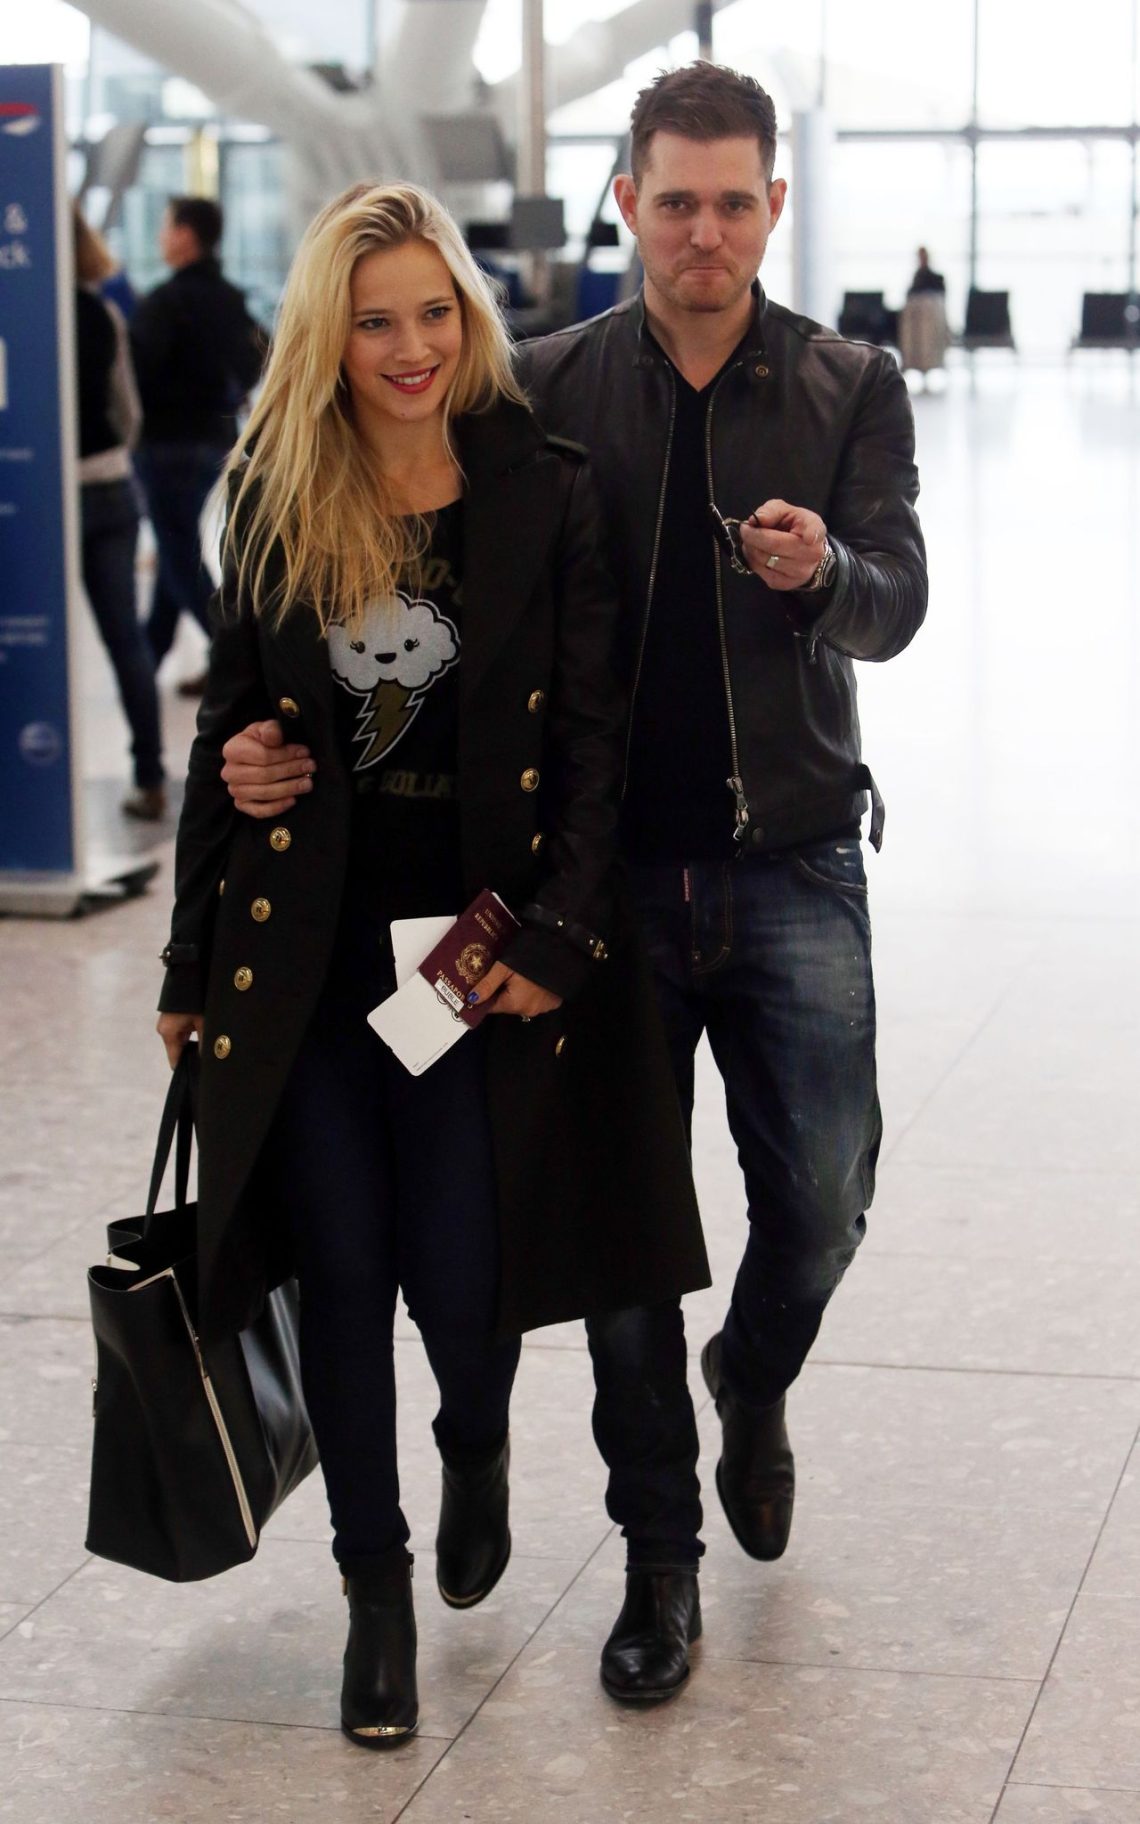 Sänger Michael Bublé und seiner Frau Luisana Lopilato sind zum vierten Mal Eltern geworden.